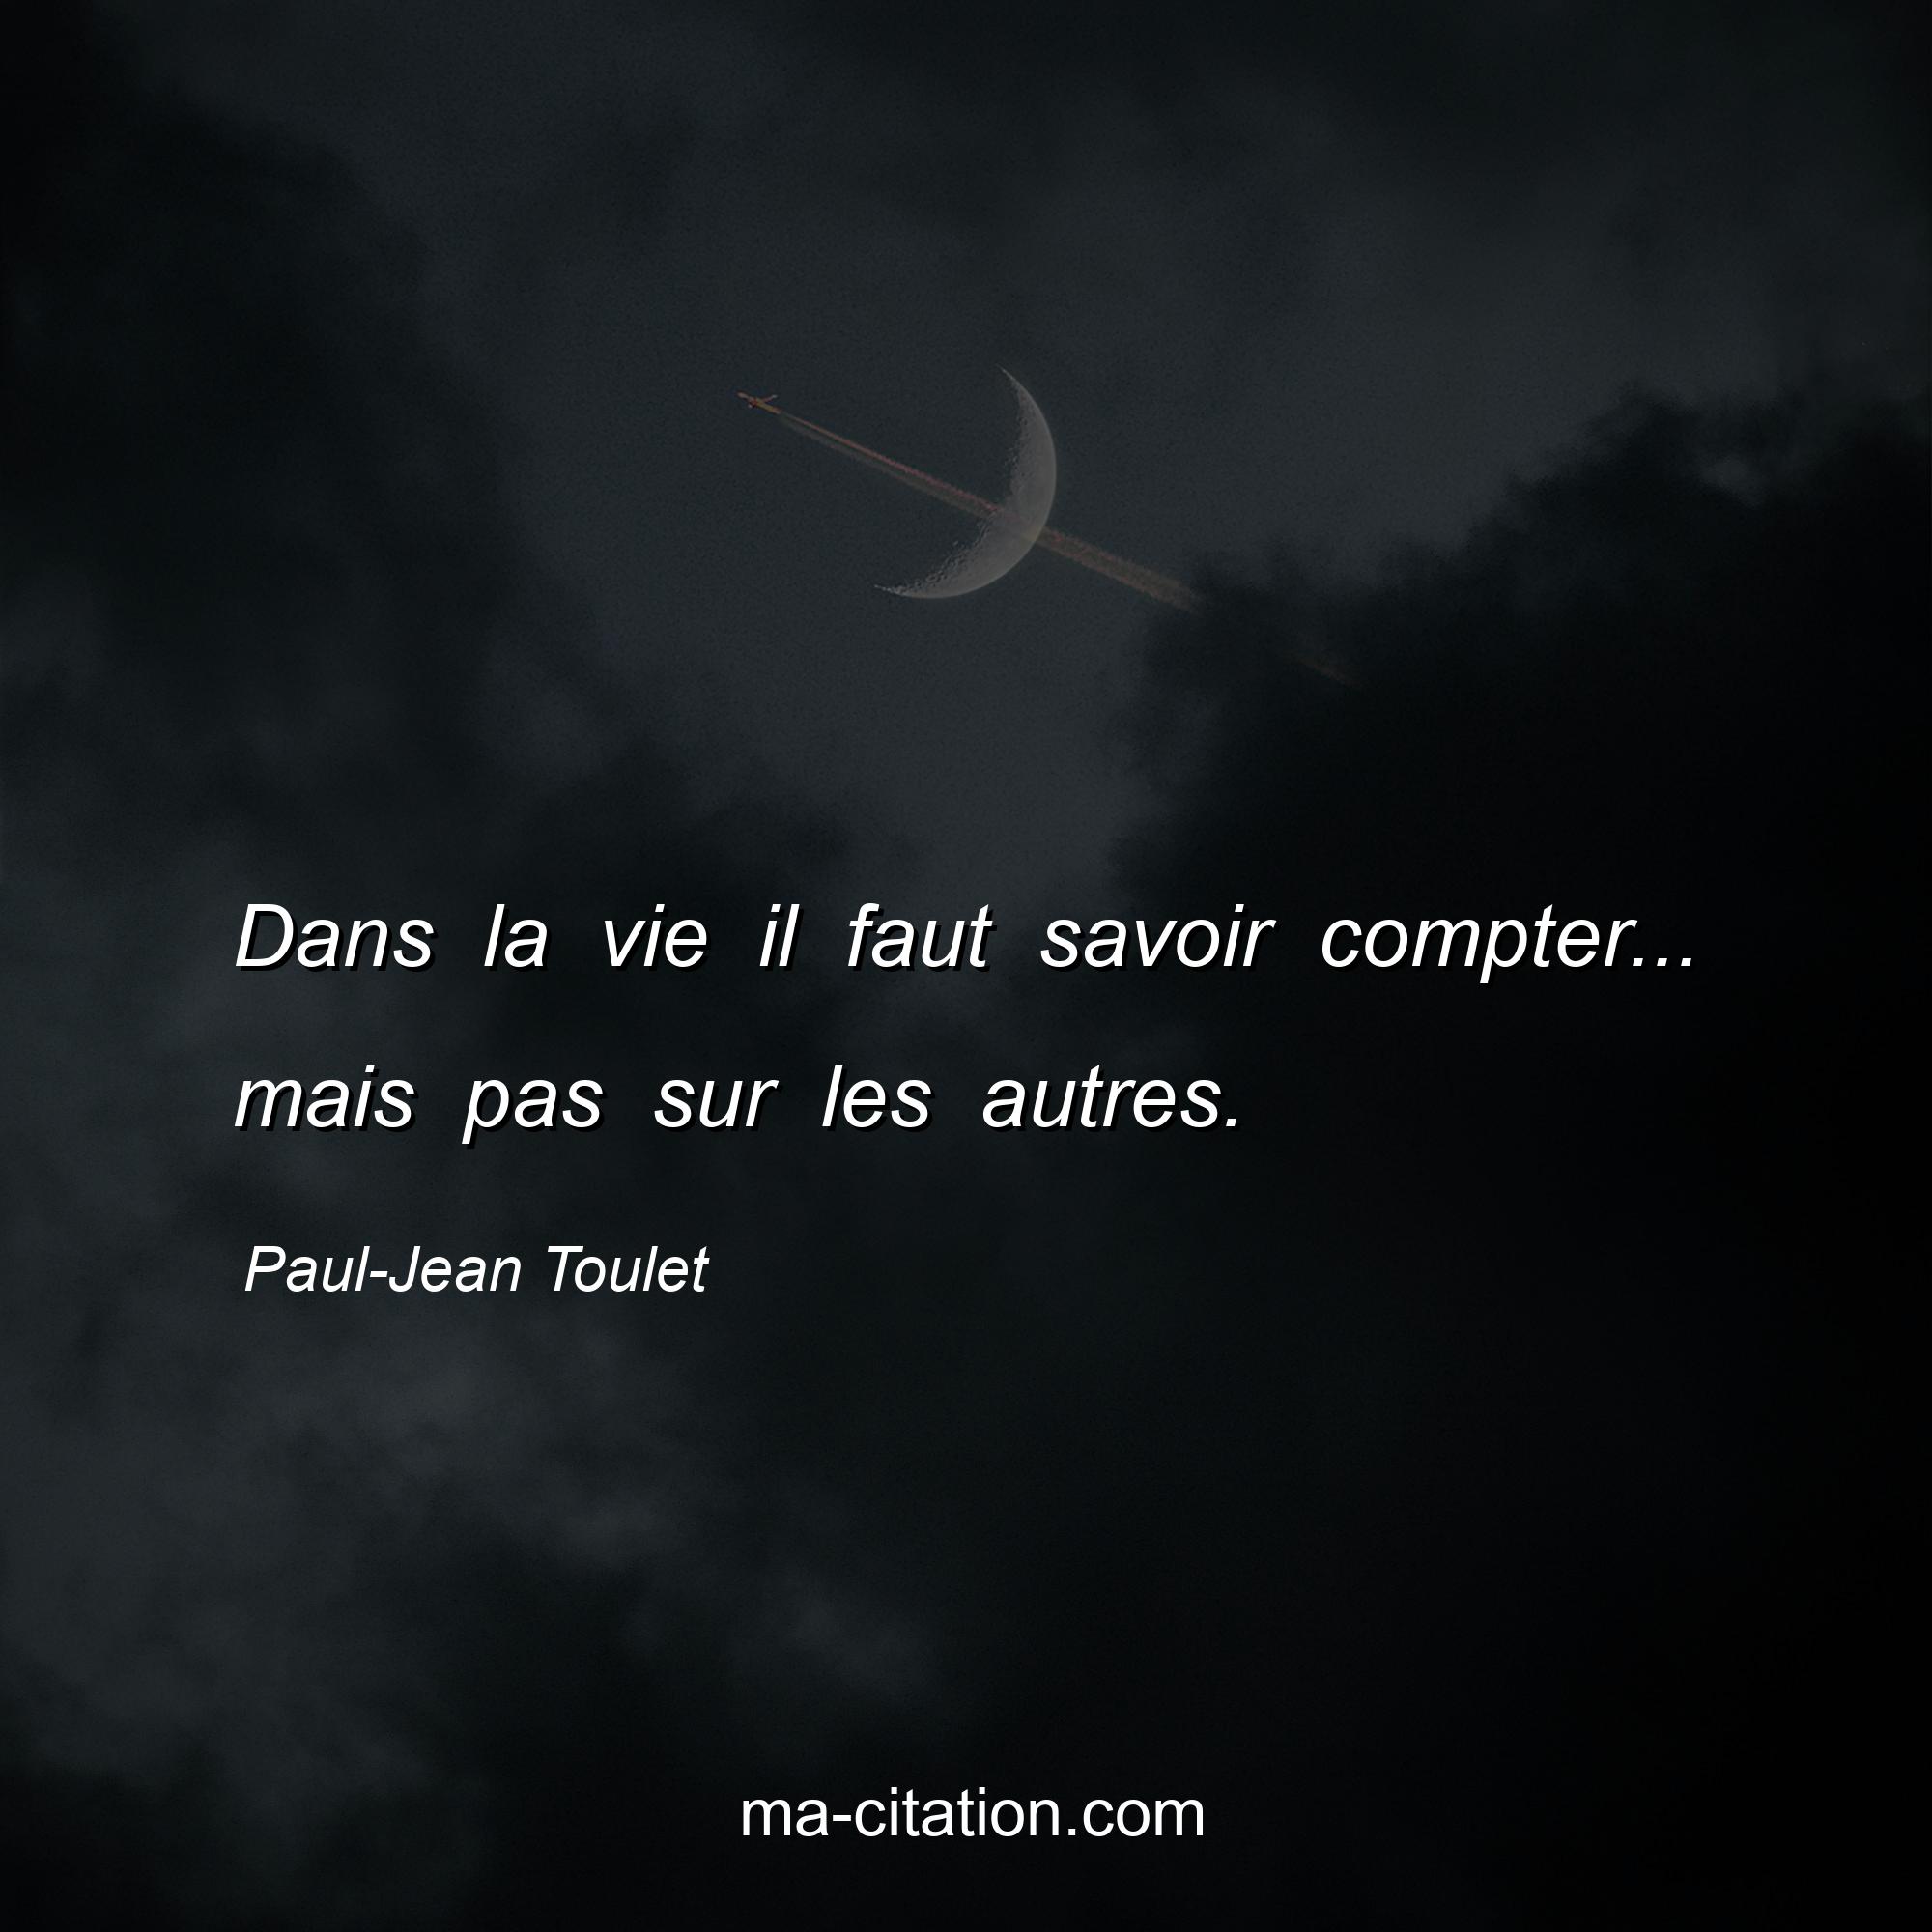 Paul-Jean Toulet : Dans la vie il faut savoir compter... mais pas sur les autres.